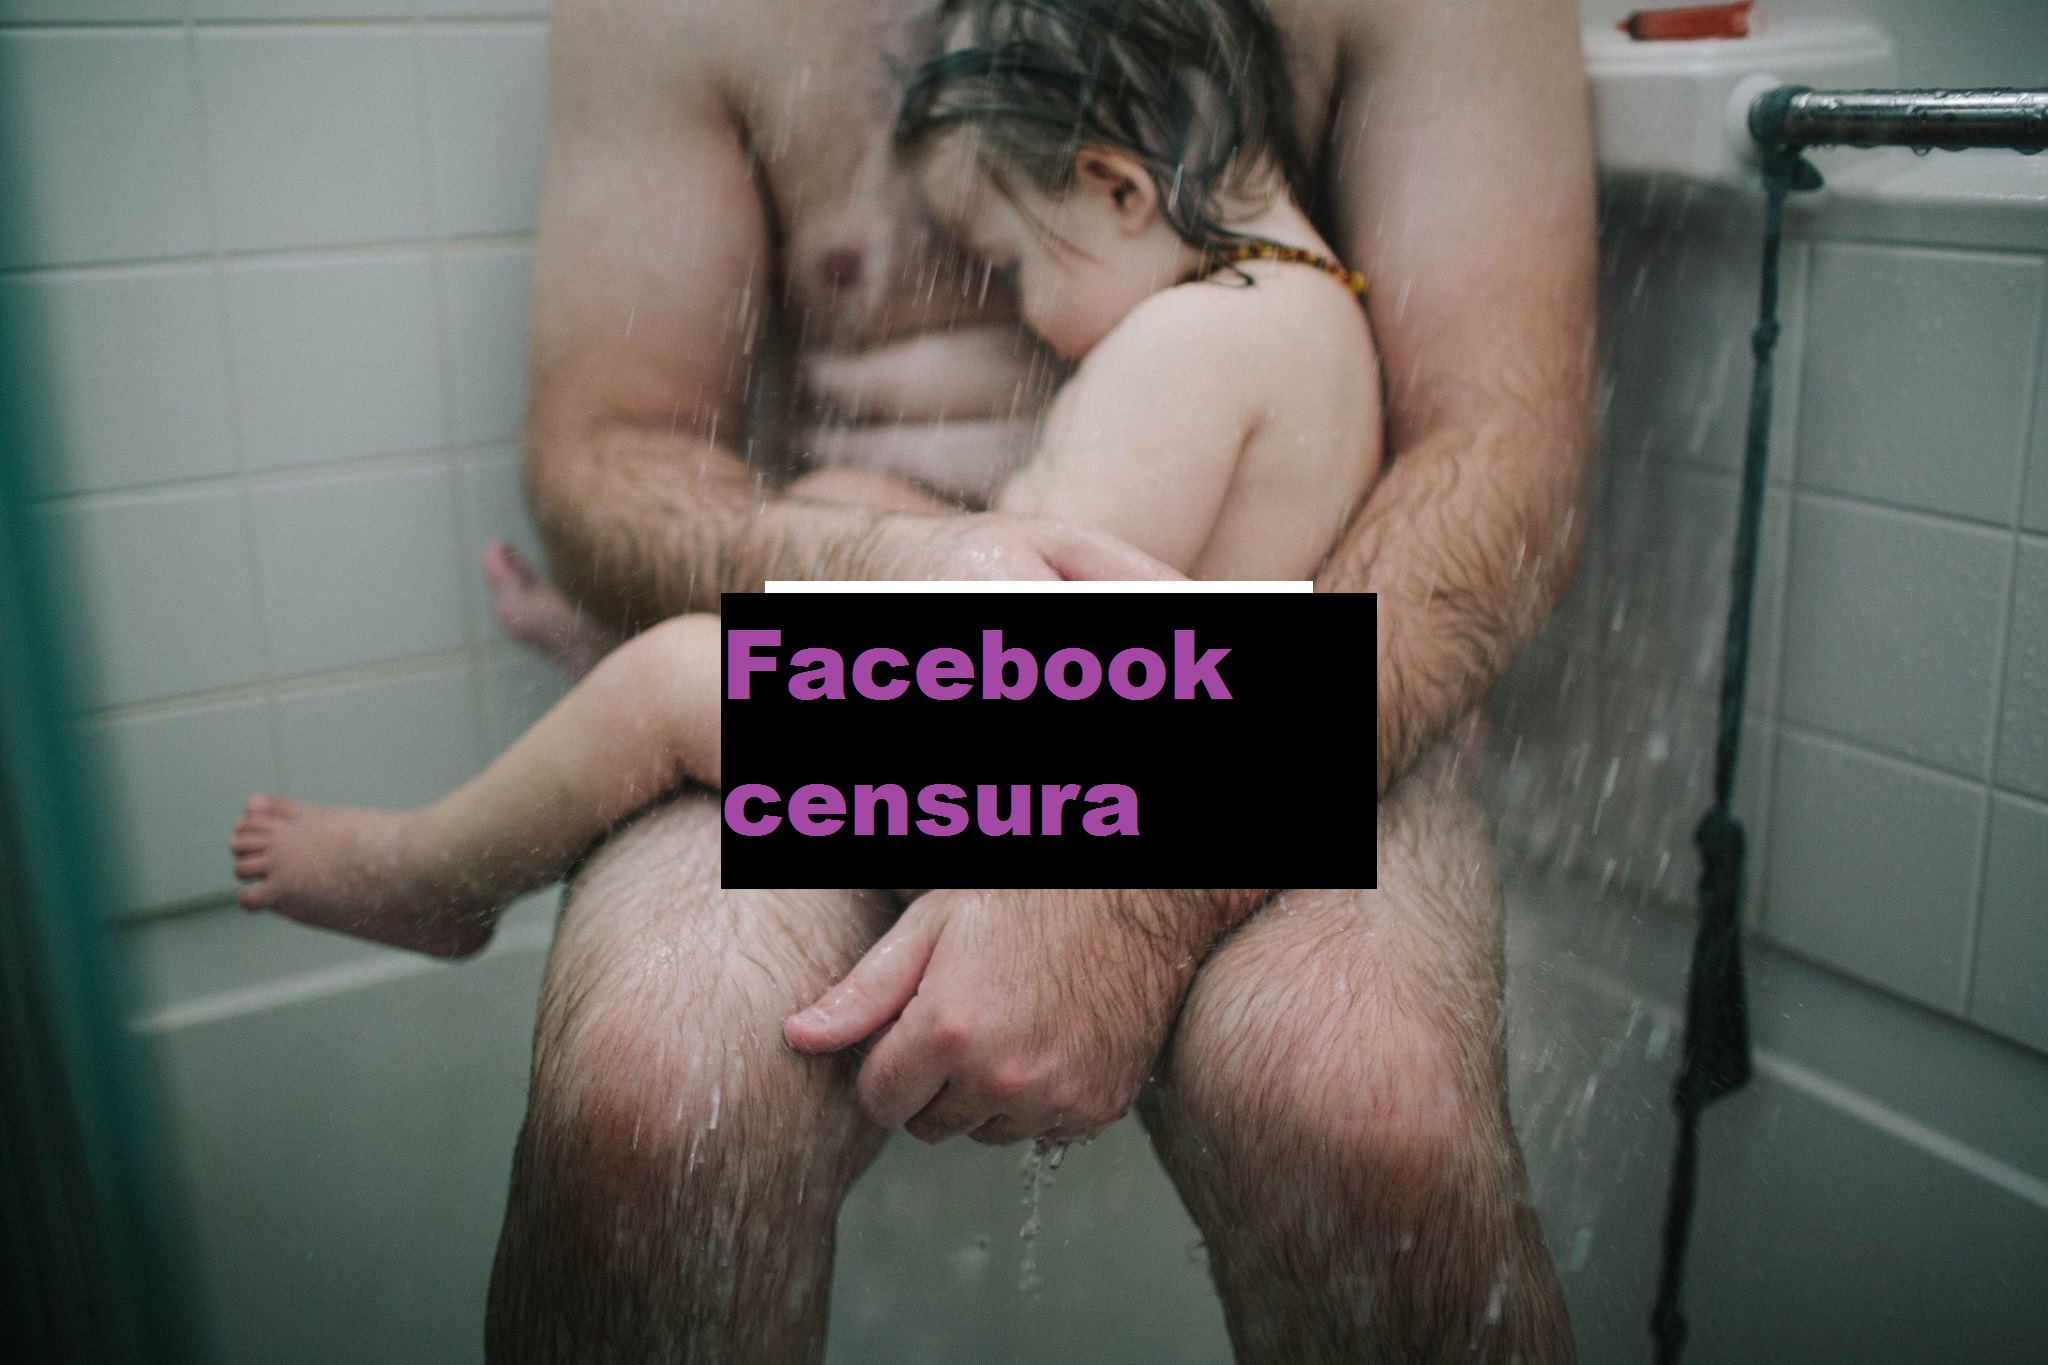 Heather Whitten compartilha a foto do marido com o filho no chuveiro. Ela não esperava esta reacção.